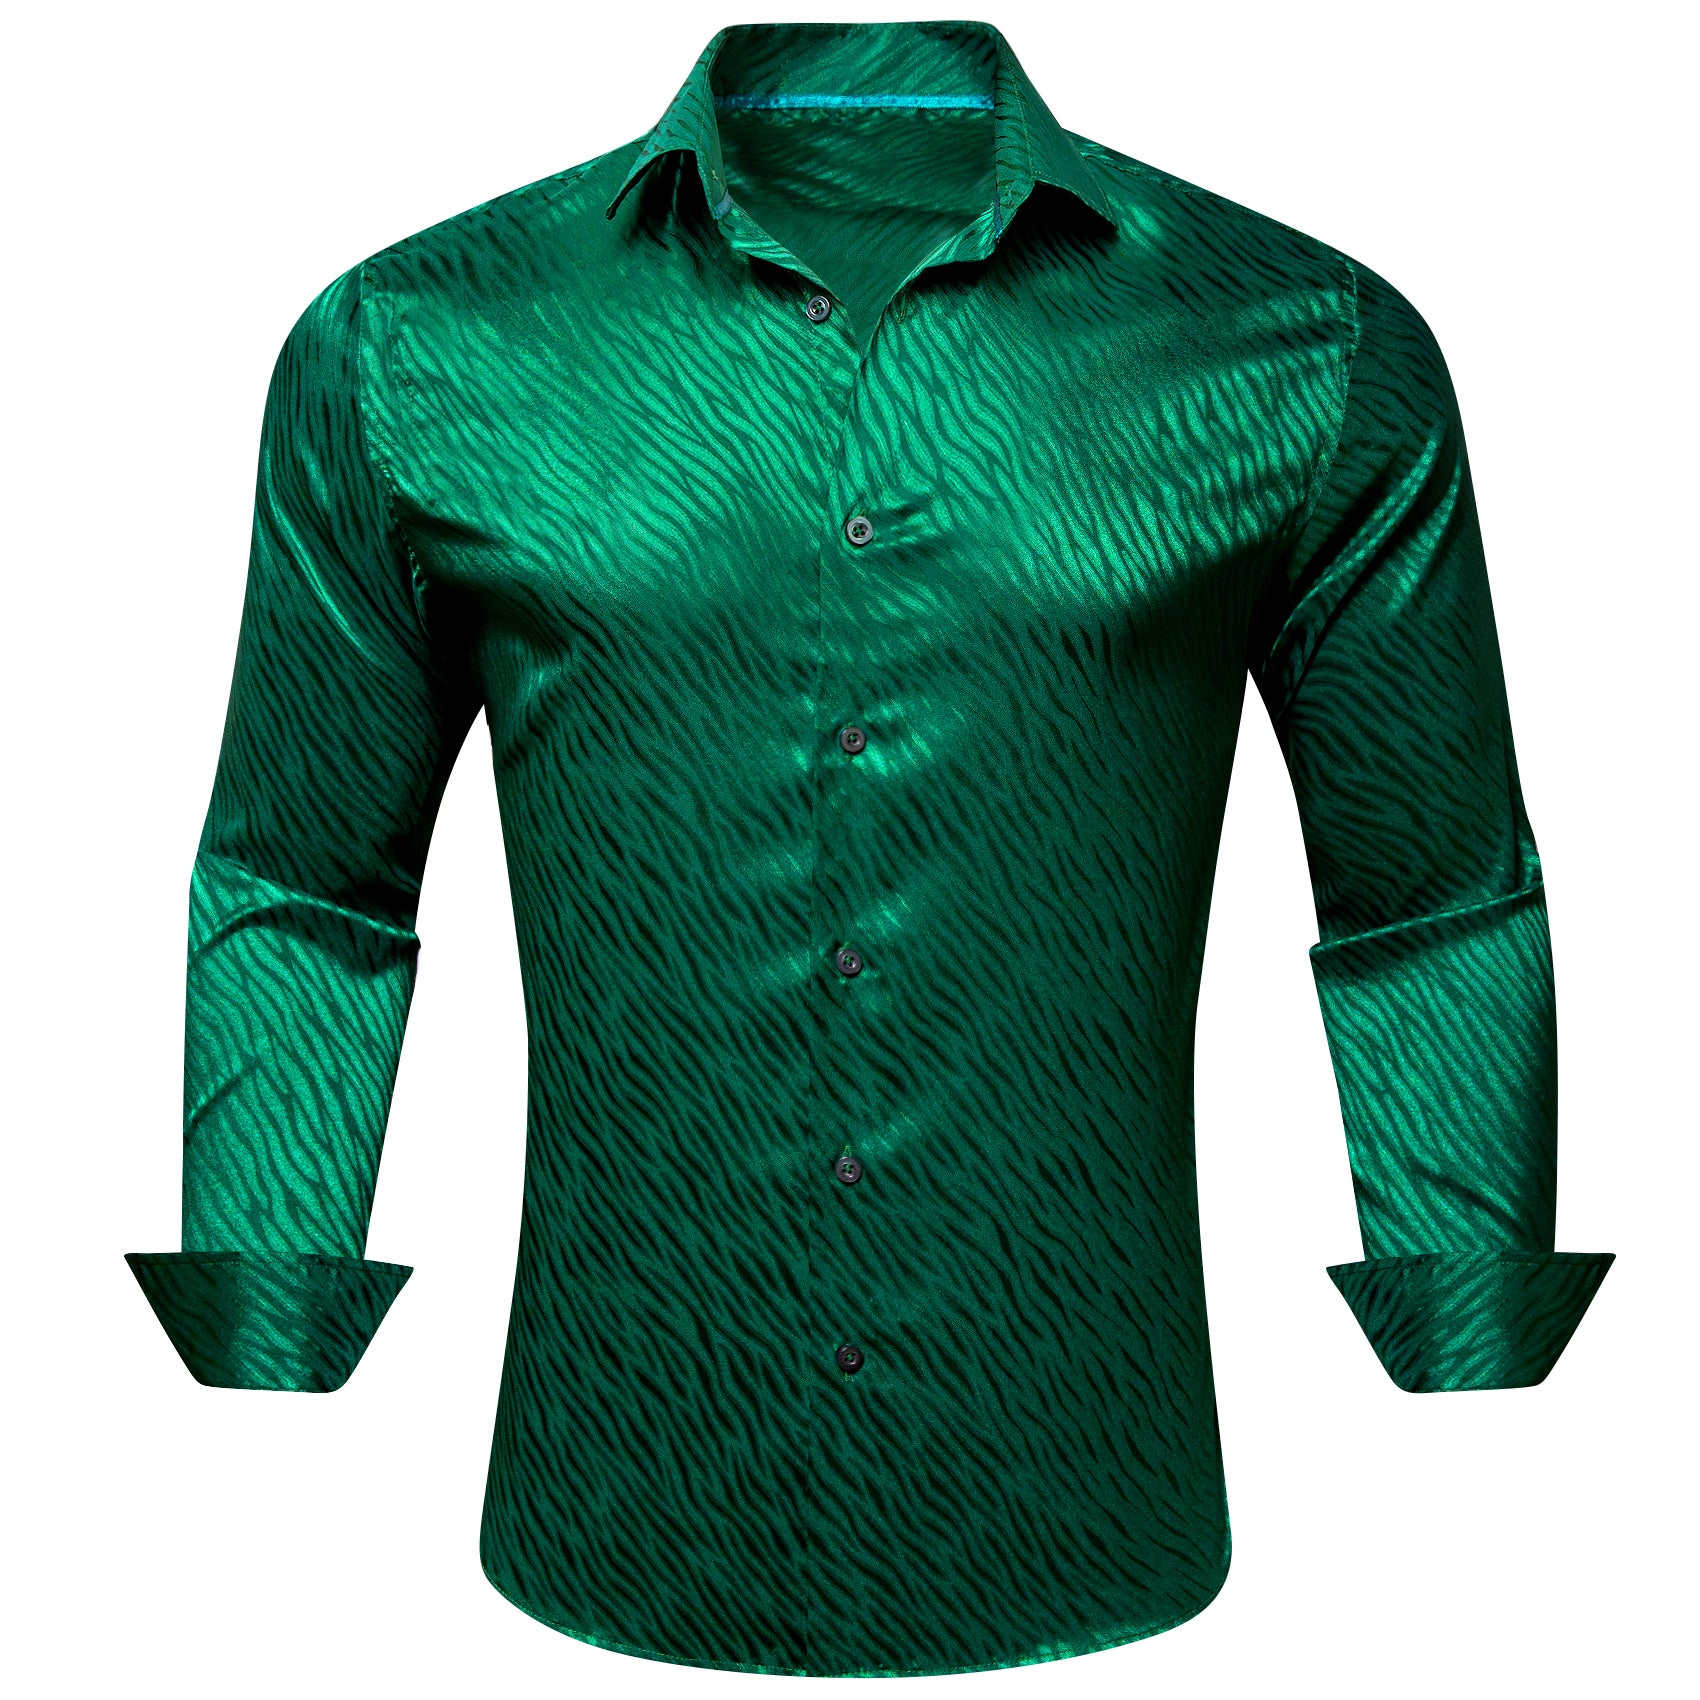 Barry.wang Grass Green Ripple Silk Men's Shirt